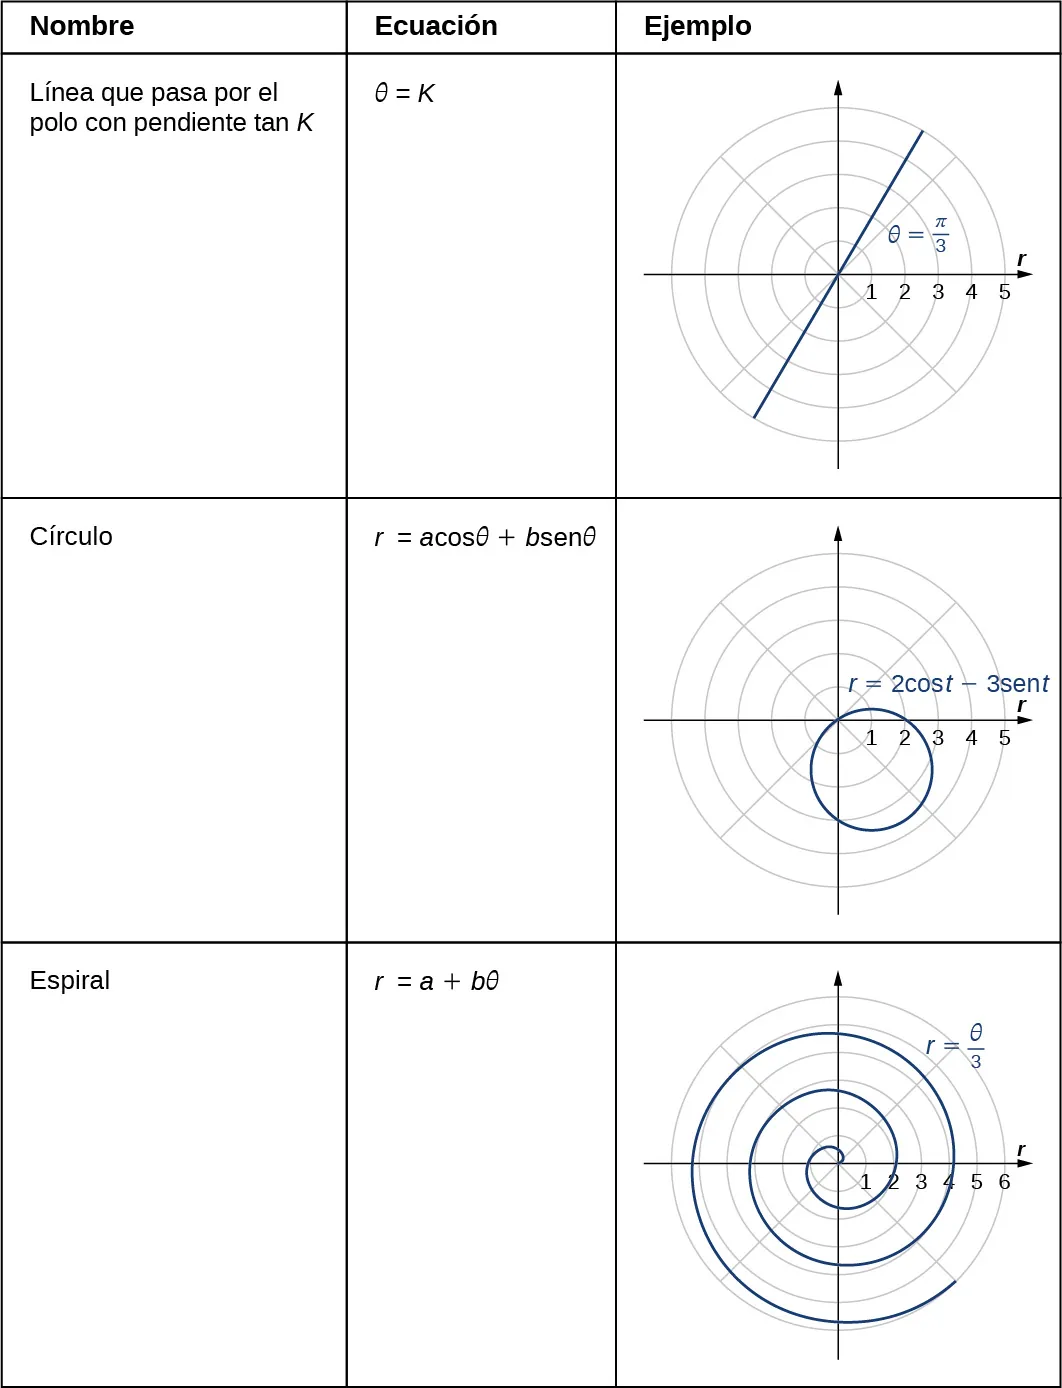 Esta tabla tiene tres columnas y 3 filas. La primera fila es una fila de cabecera y se da de izquierda a derecha como nombre, ecuación y ejemplo. La segunda fila es la línea que pasa por el polo con pendiente tan K; θ = K; y una imagen de una línea recta en el plano de coordenadas polares con θ = π/3. La tercera fila es Círculo; r = a cosθ + b senθ; y una imagen de un círculo en el plano de coordenadas polares con ecuación r = 2 cos(t) – 3 sen(t): el círculo toca el origen pero tiene centro en el tercer cuadrante.